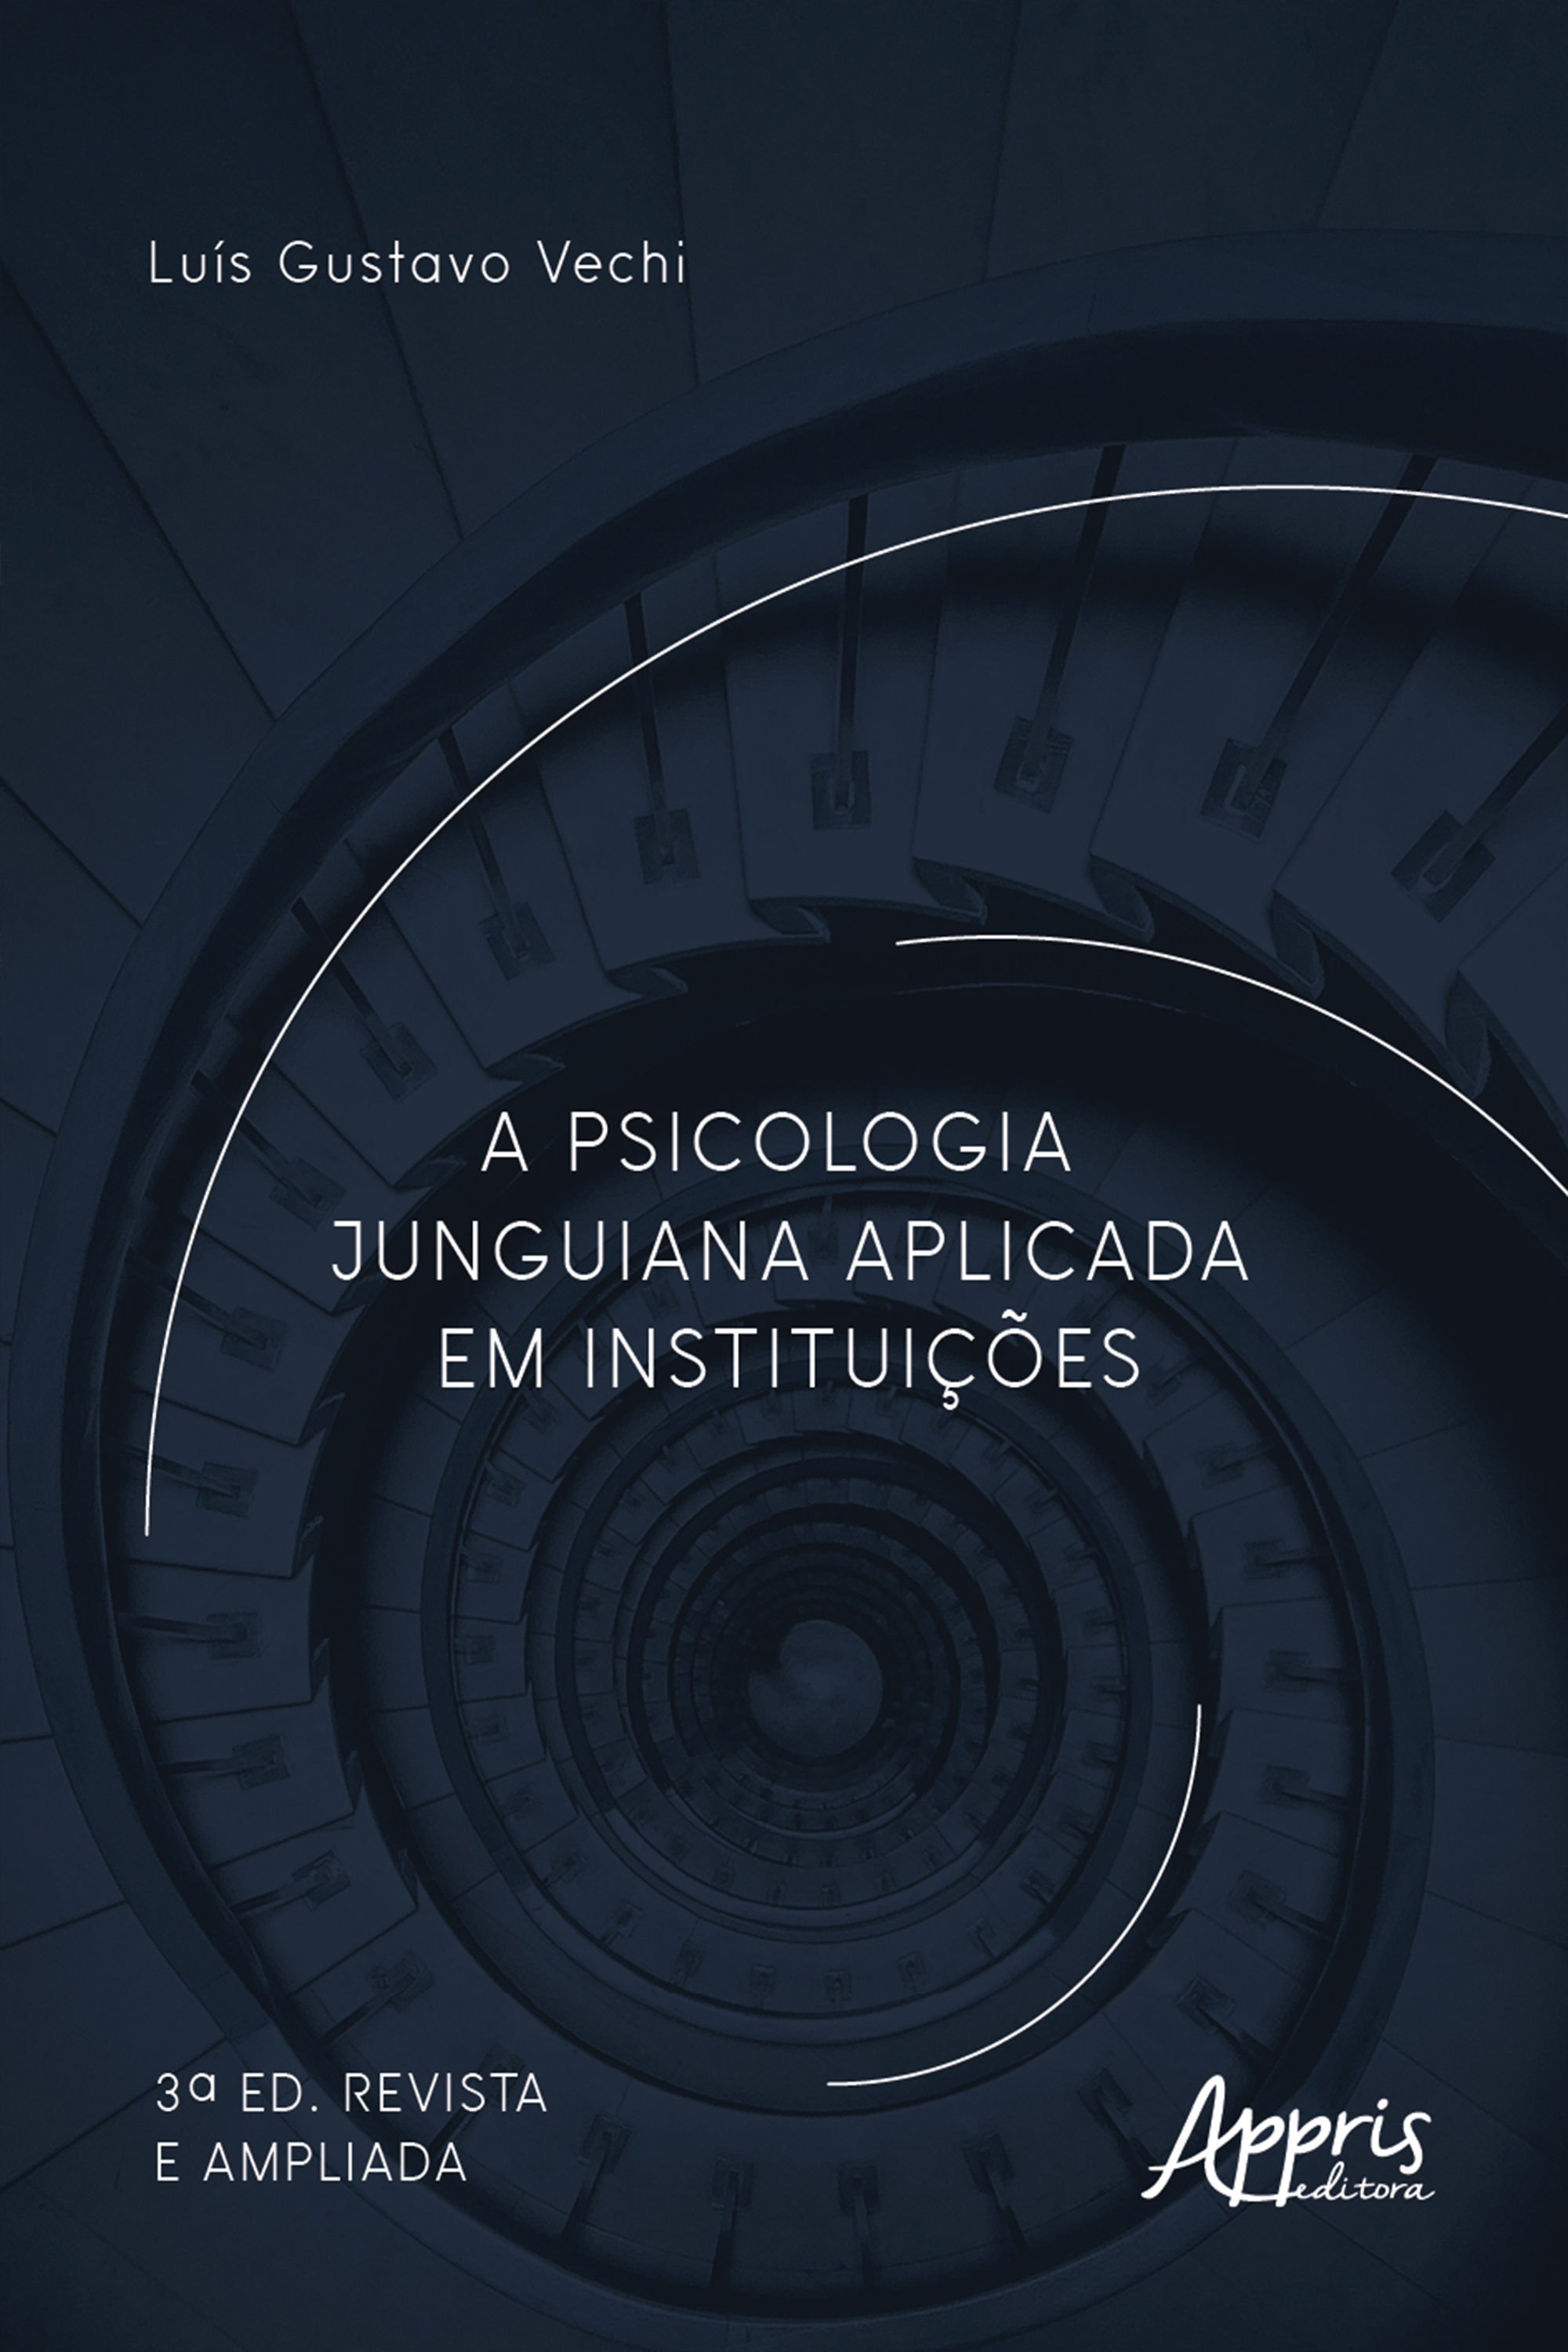 A Psicologia Junguiana Aplicada em Instituições